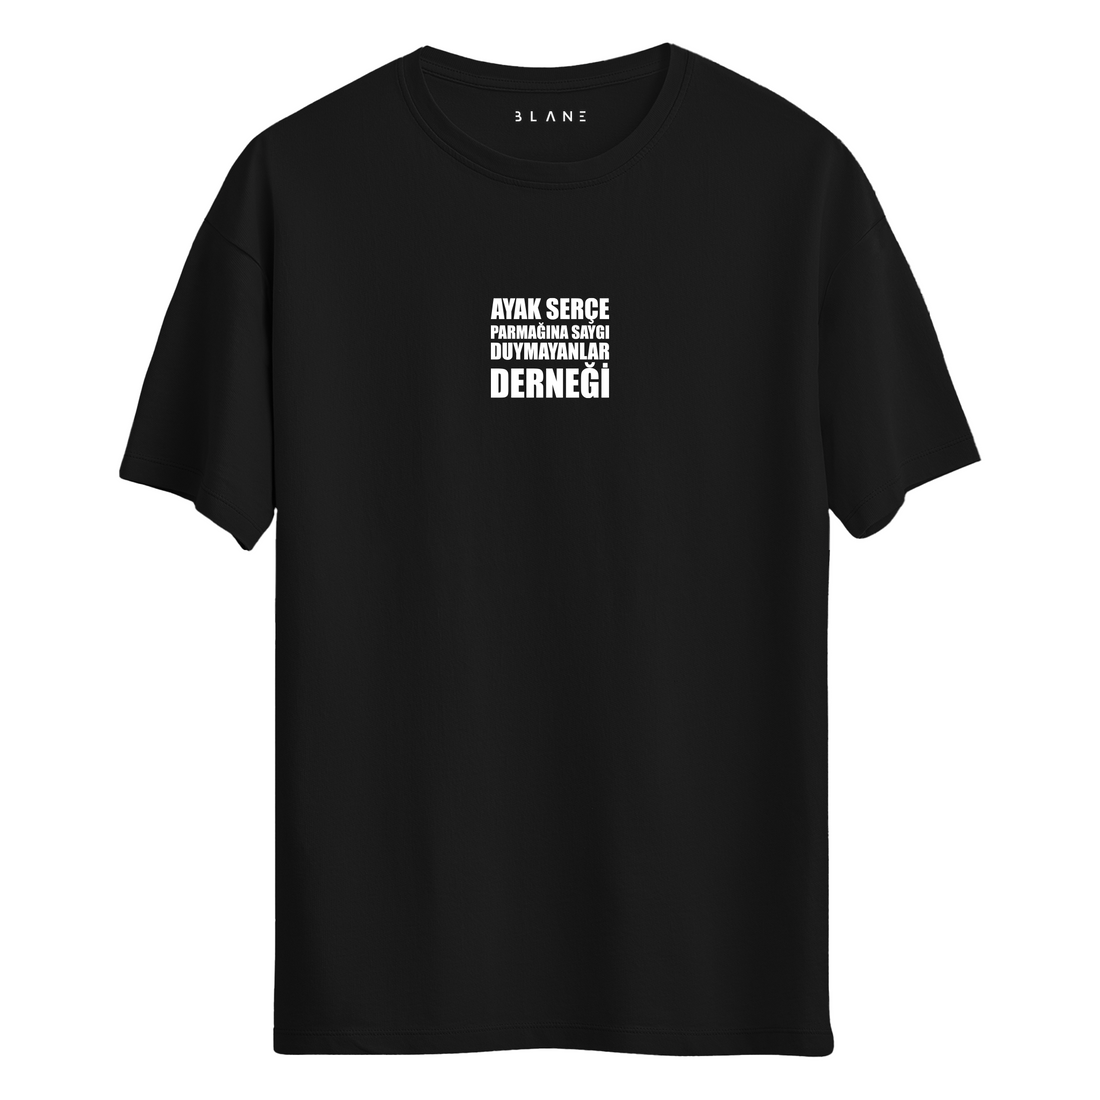 Ayak Serçe Parmağına Saygı Duymayanlar Derneği - T-Shirt